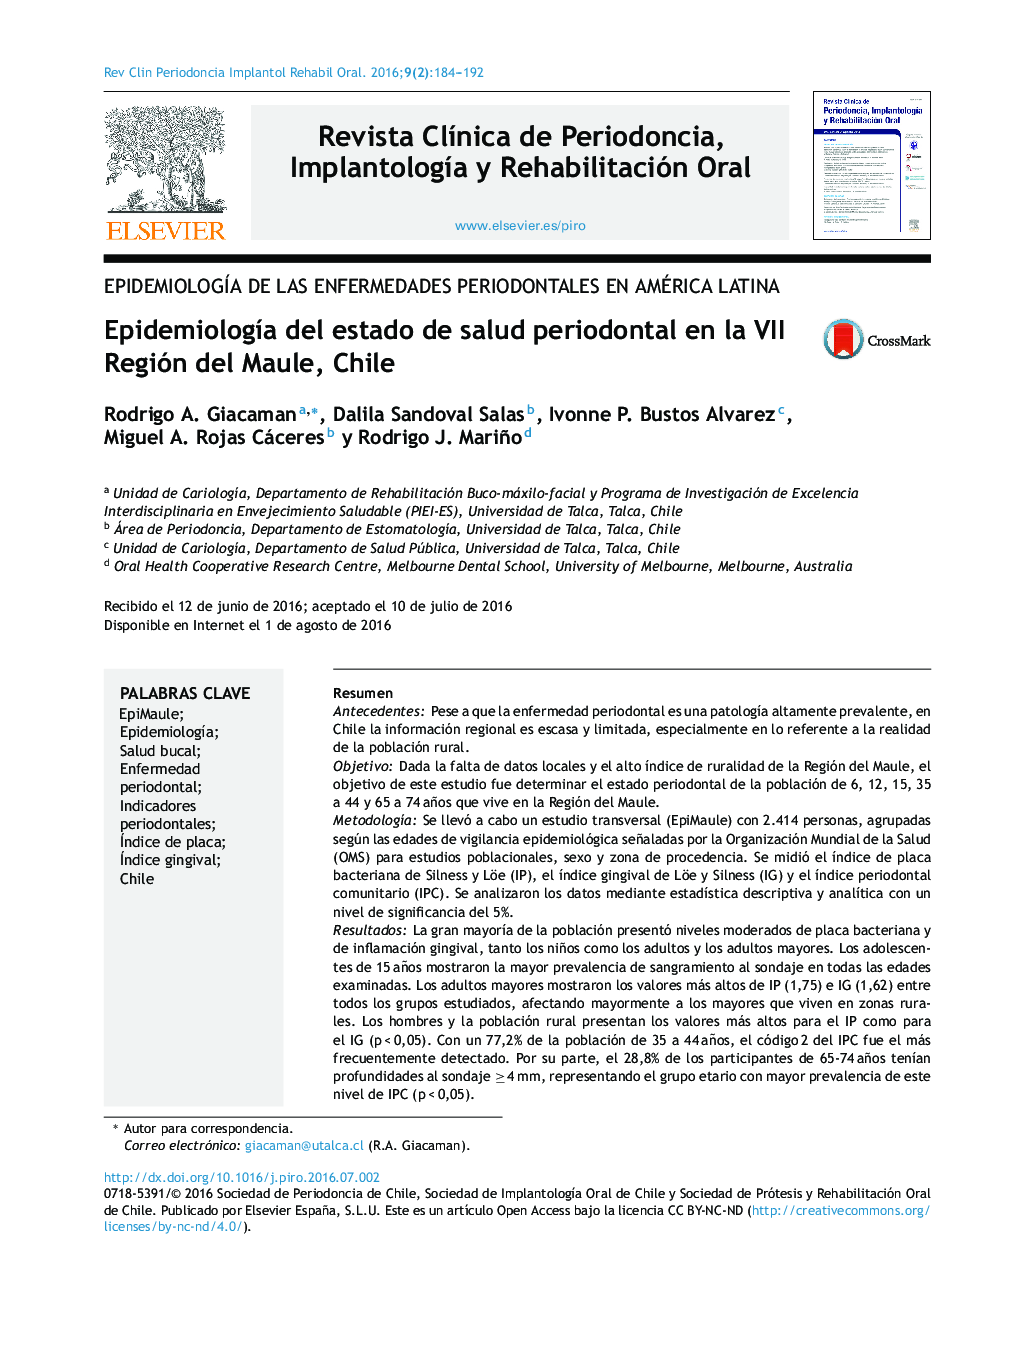 Epidemiología del estado de salud periodontal en la VII Región del Maule, Chile